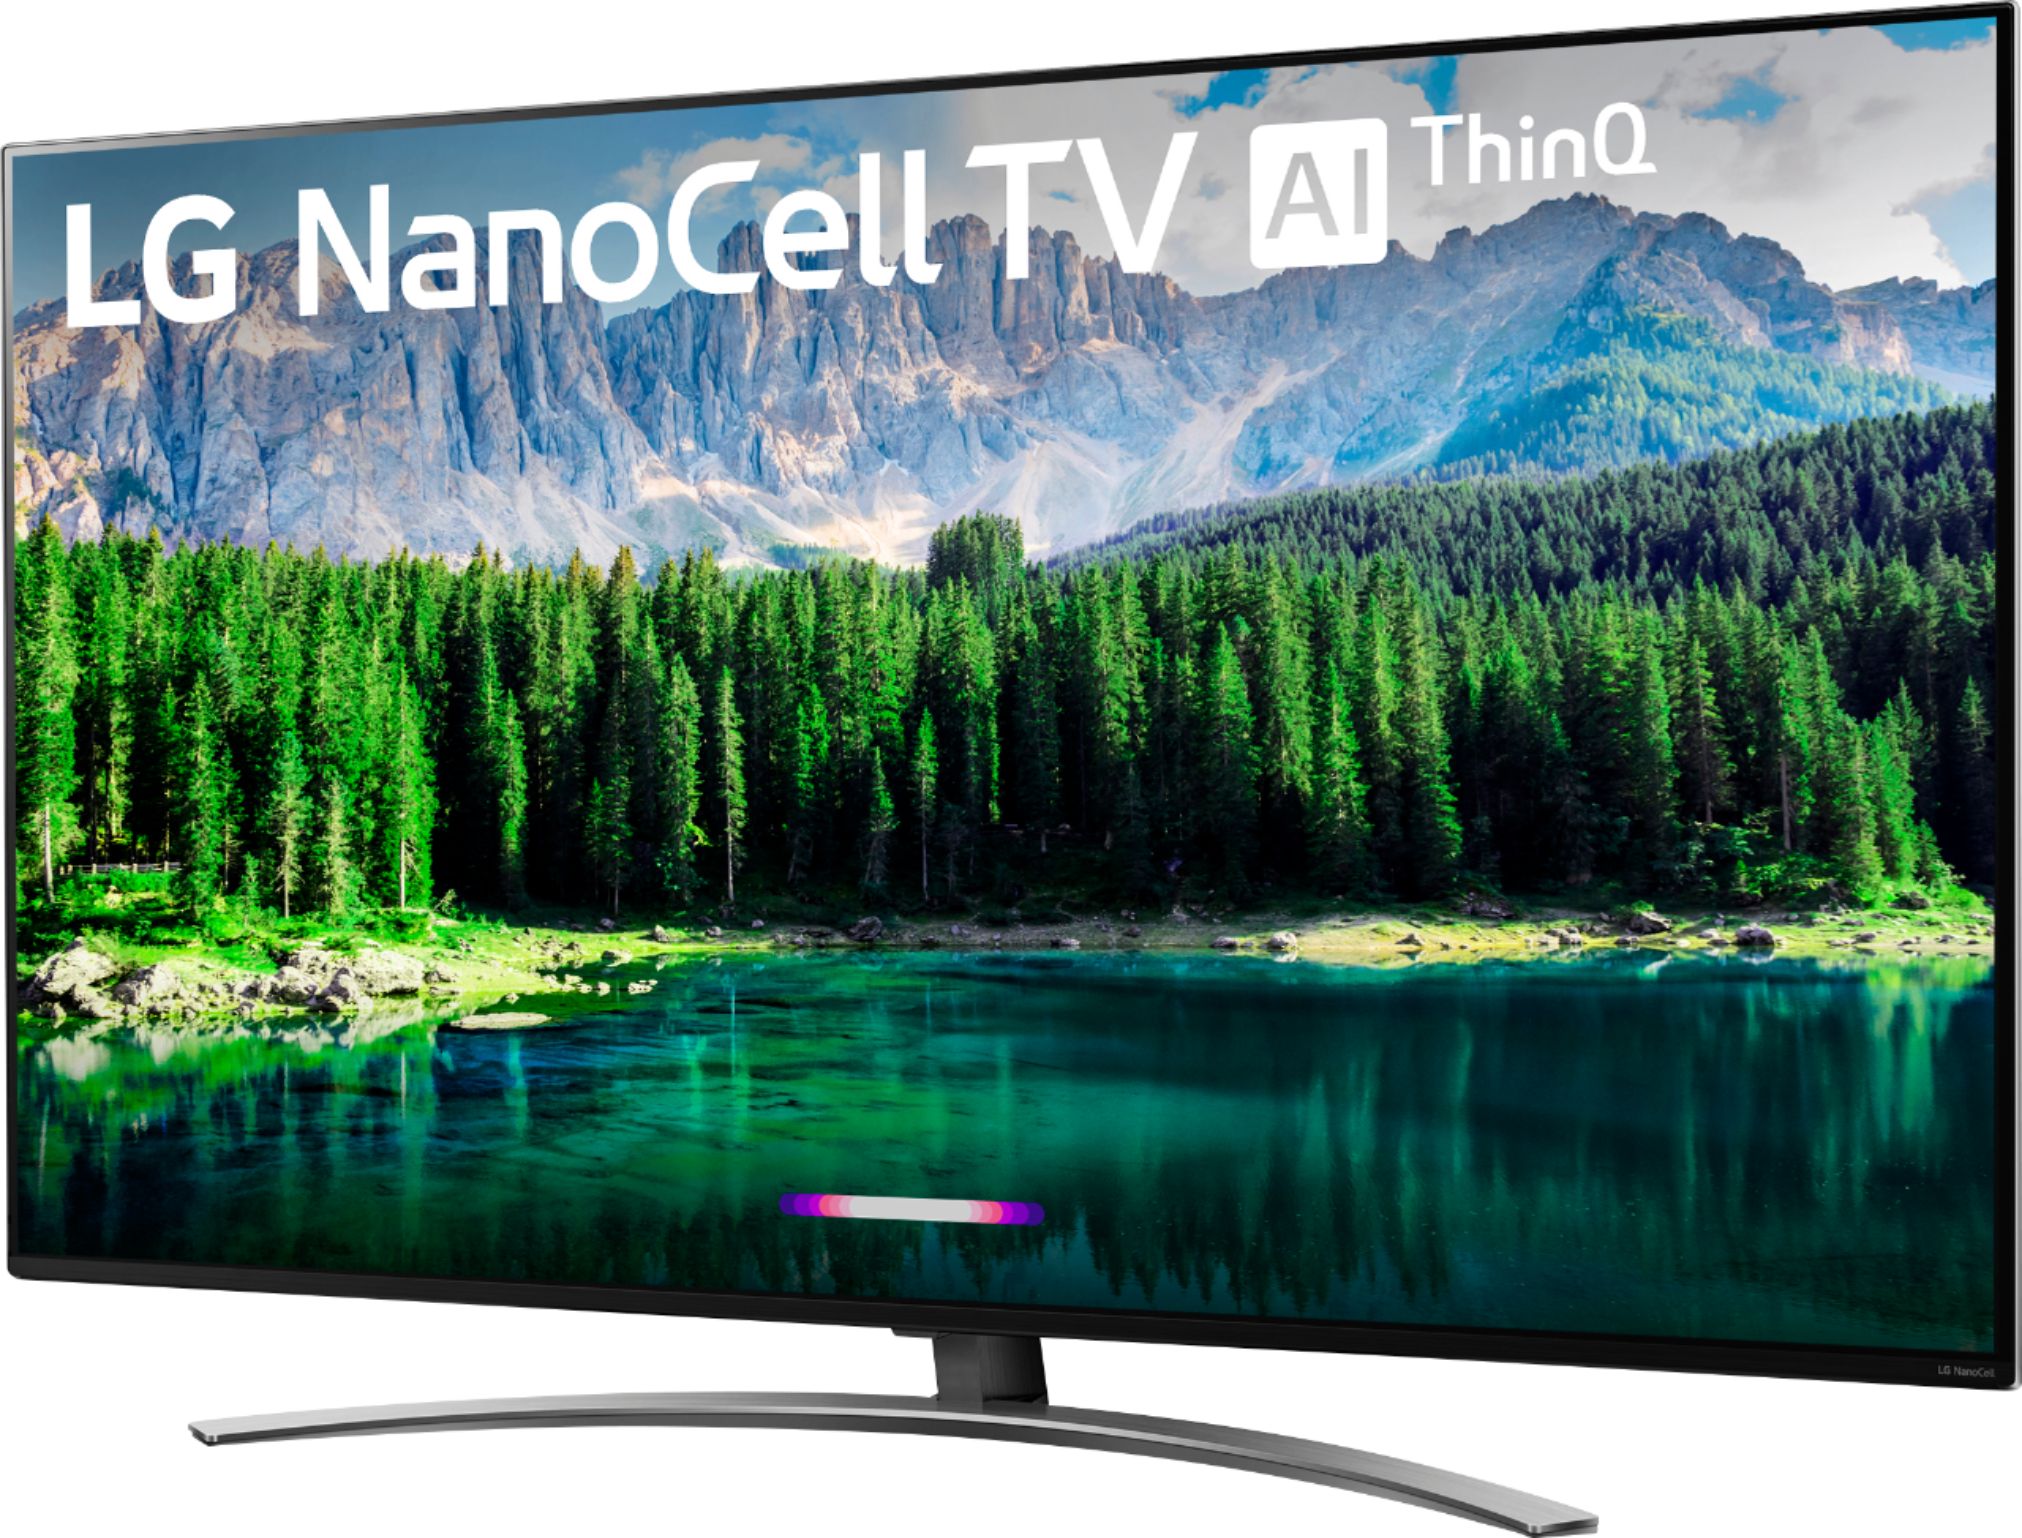 Smart TV 65 LG NanoCell 4K UHD 65NANO80 Negro